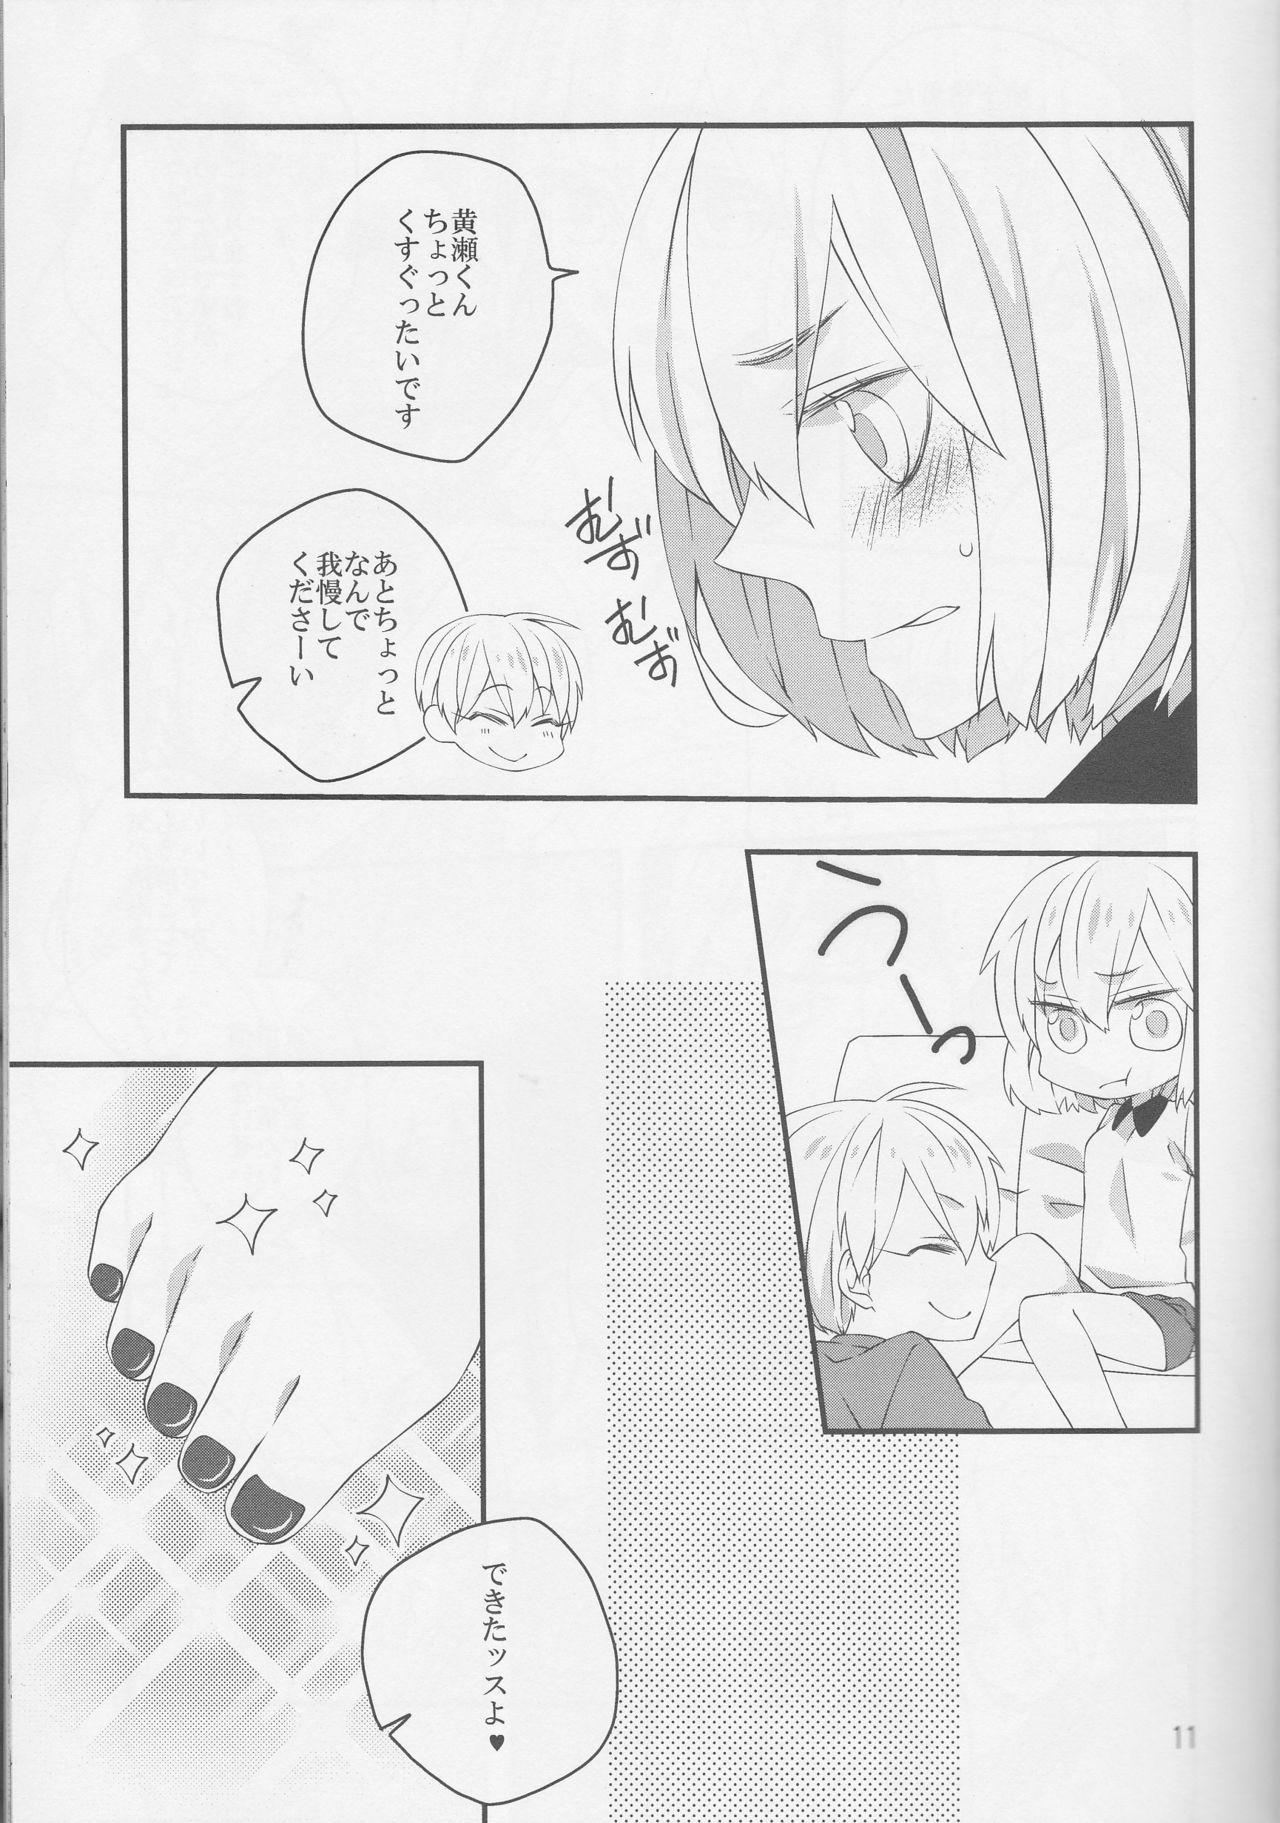 Licking Pedicure Time - Kuroko no basuke White Chick - Page 11